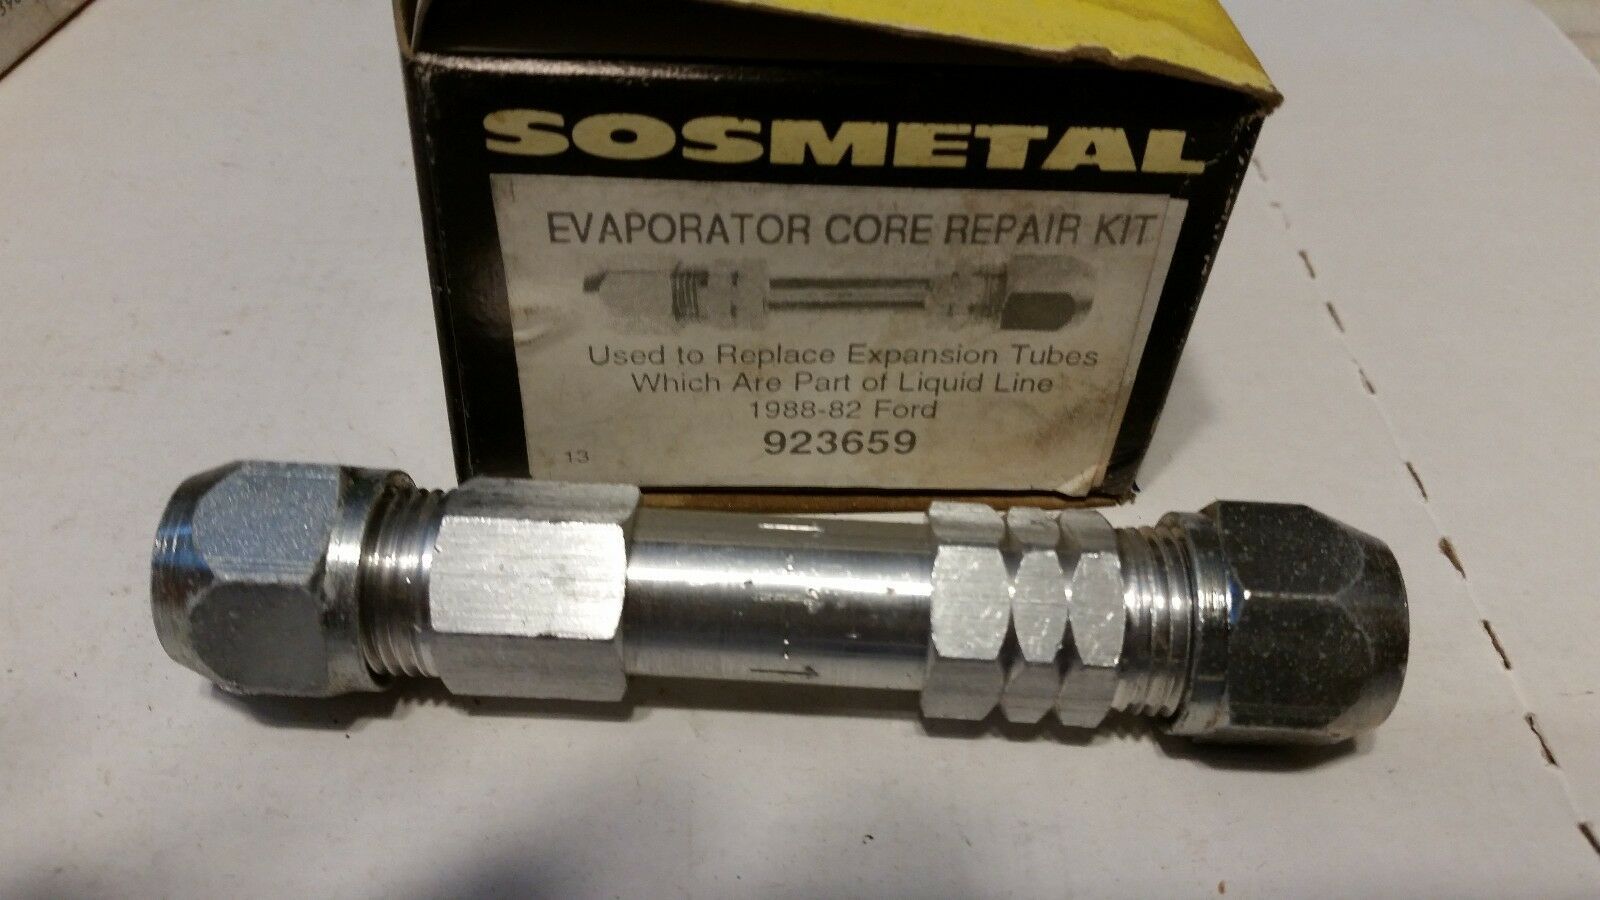 SOS Metal OEM Evaporator core repair kit 1982-1988 Ford 923659 expansion tube - $17.81